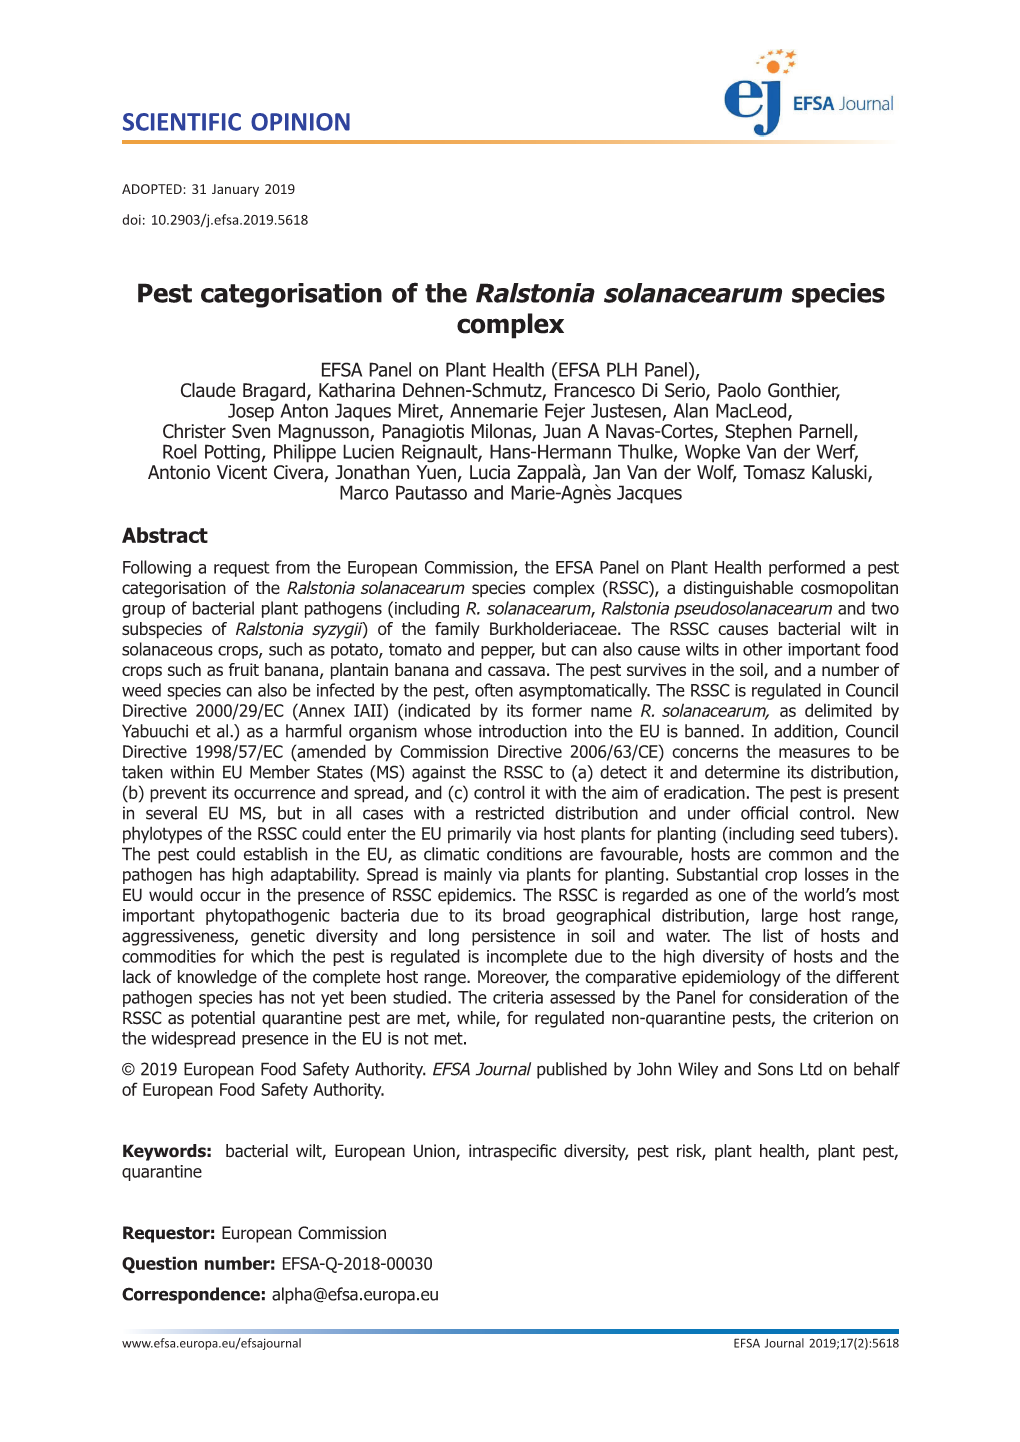 Pest Categorisation of the Ralstonia Solanacearum Species Complex